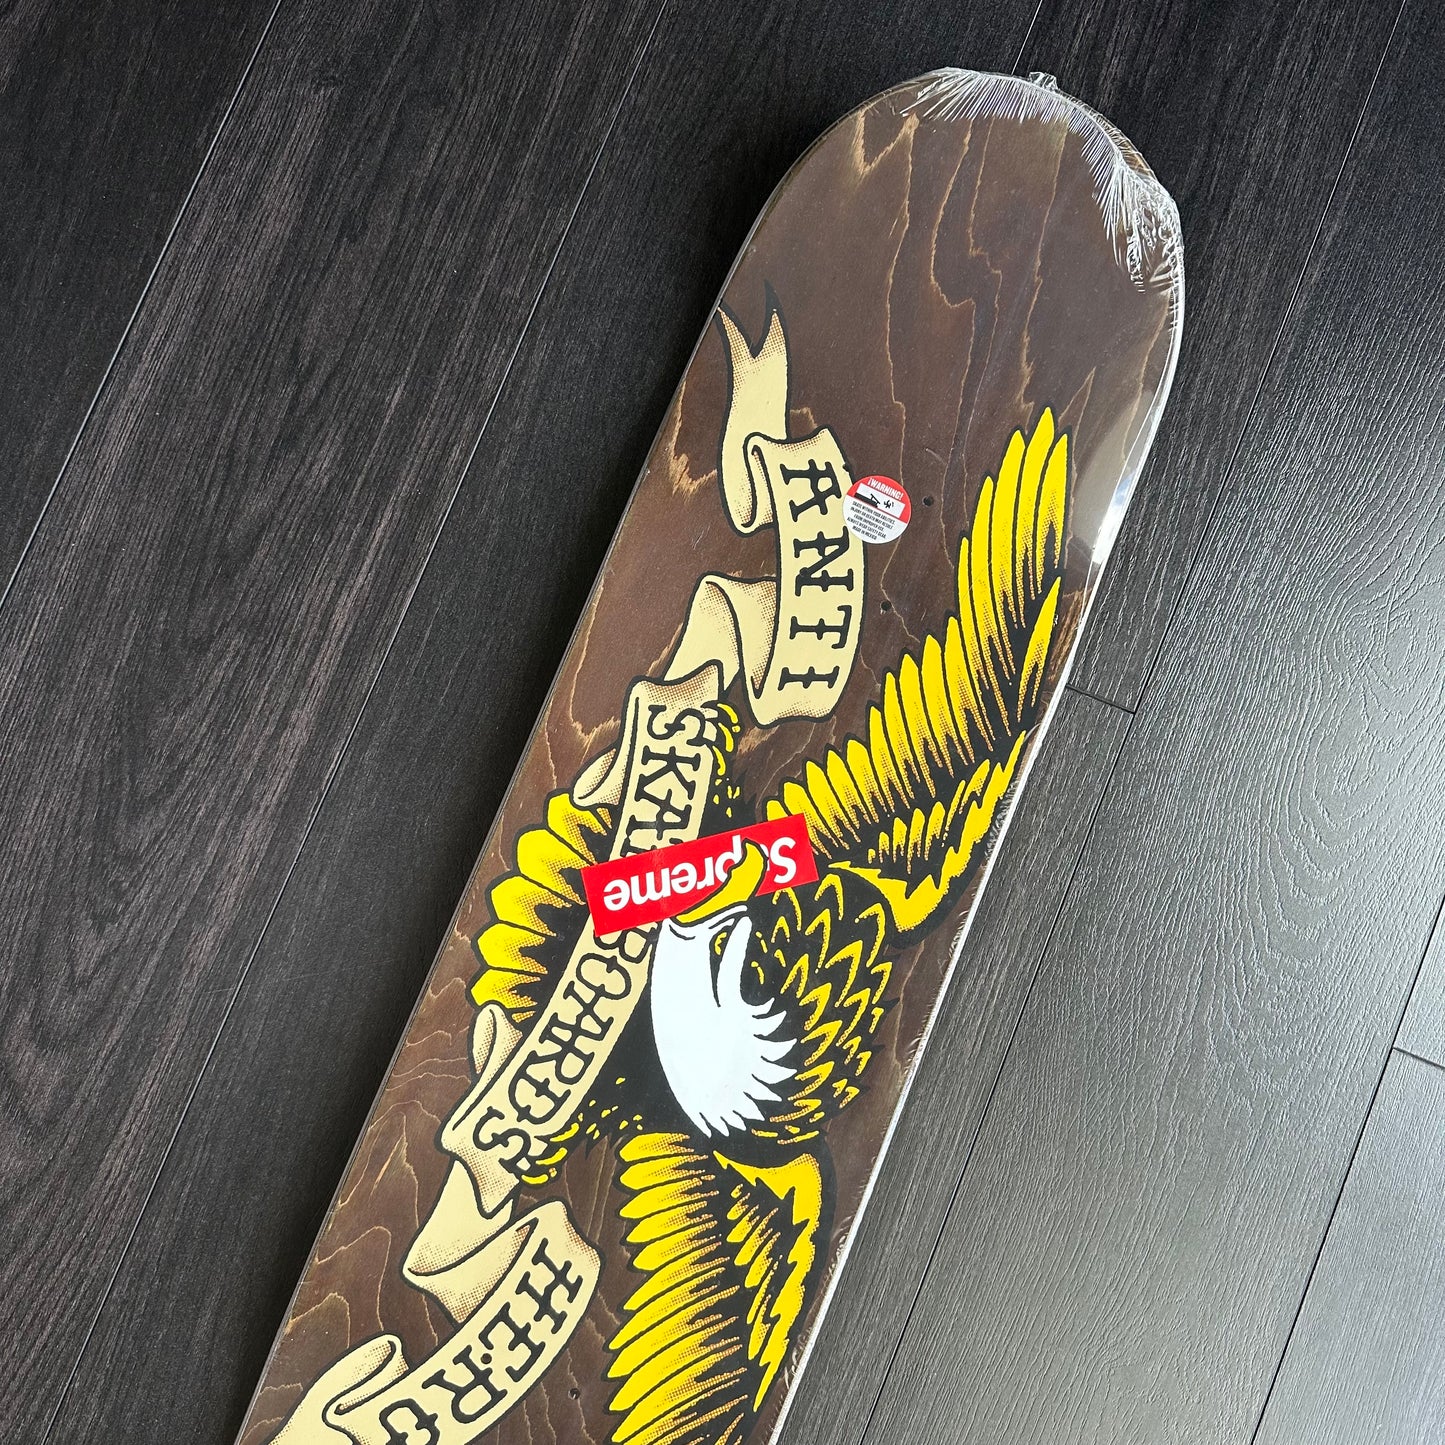 Supreme/Antihero Pope Skateboard Deck